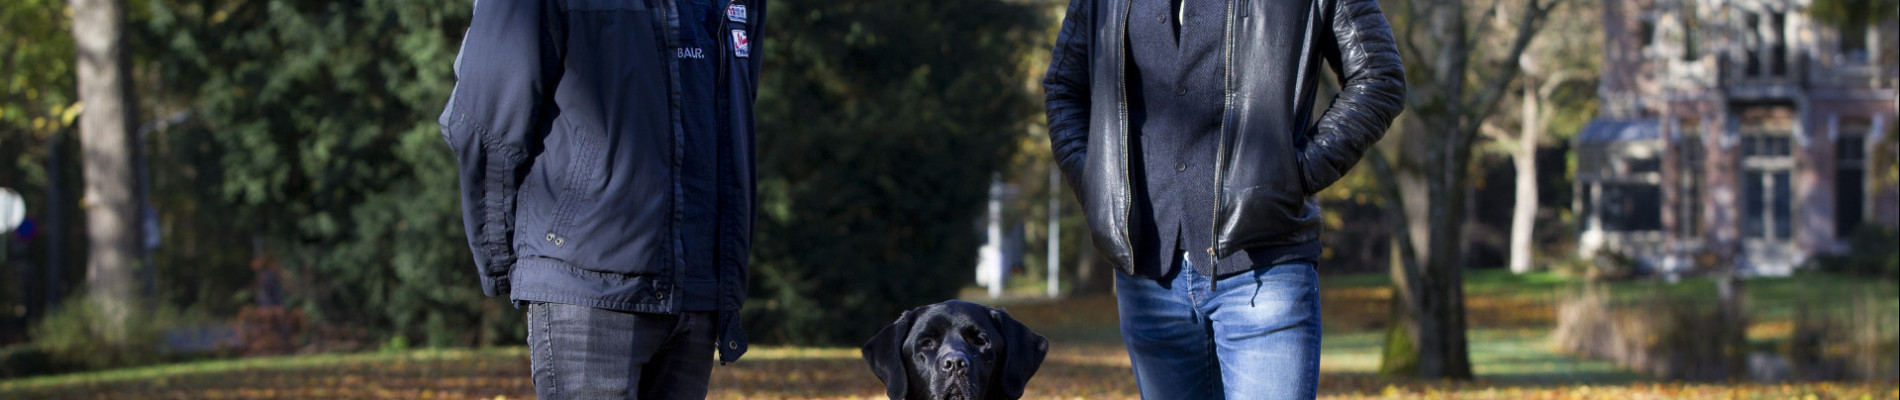 Portret van Maikel, blindengeleidehond Orris en Gerard Ekdom in een herfstig landschap